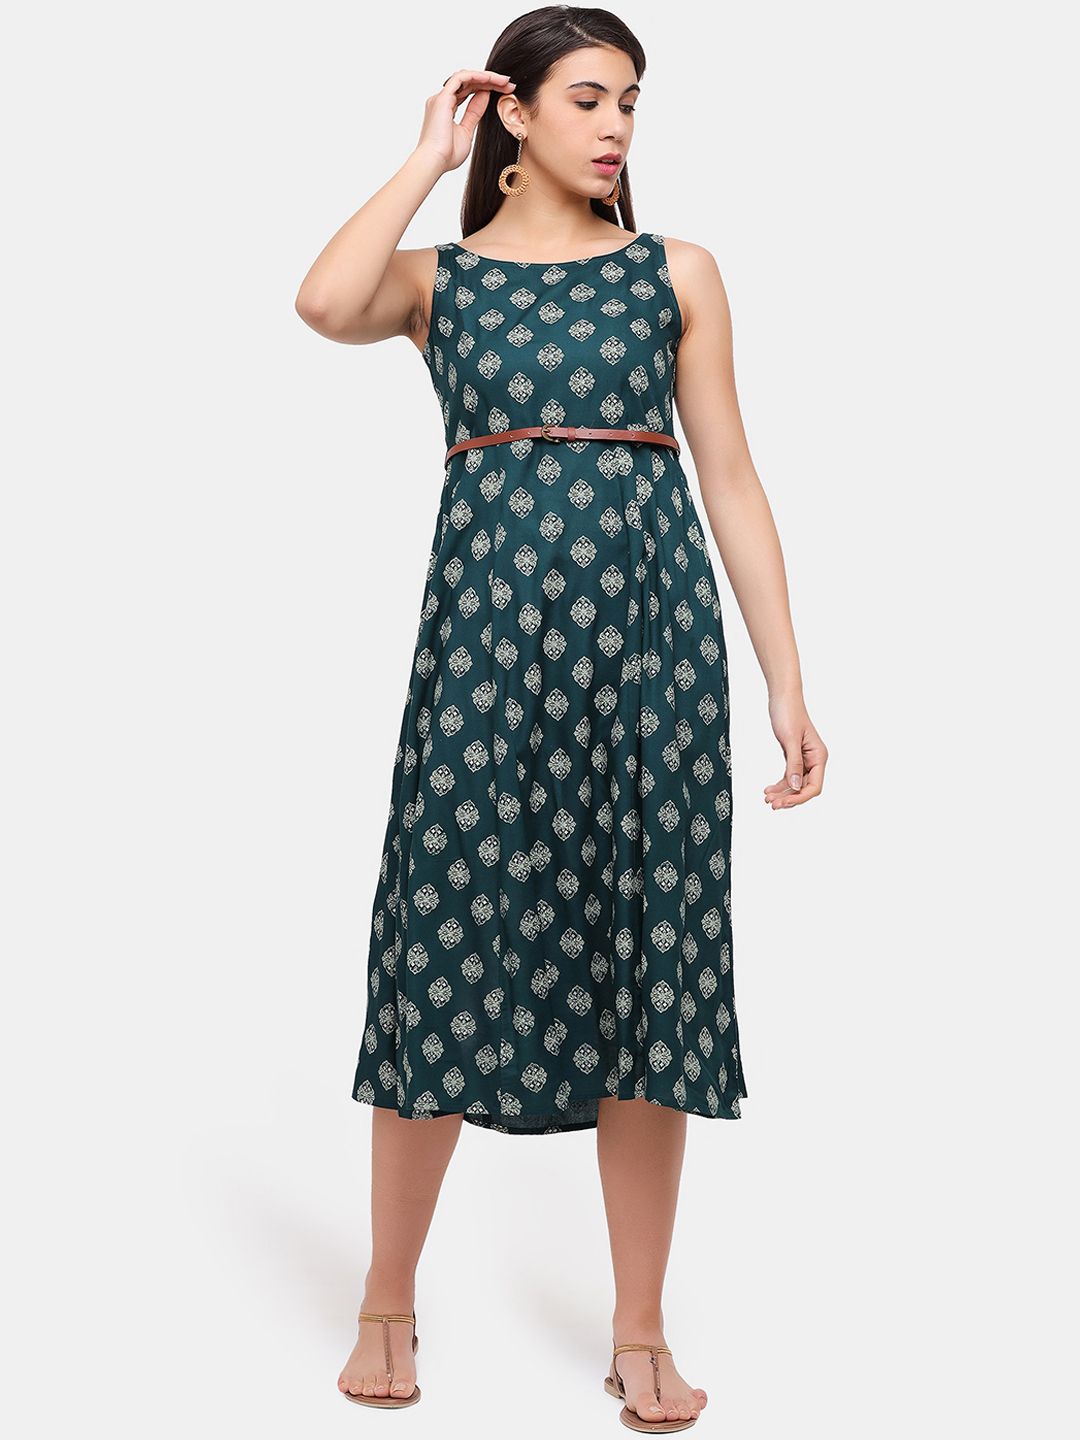 IMARA Green Floral Empire Midi Dress Price in India